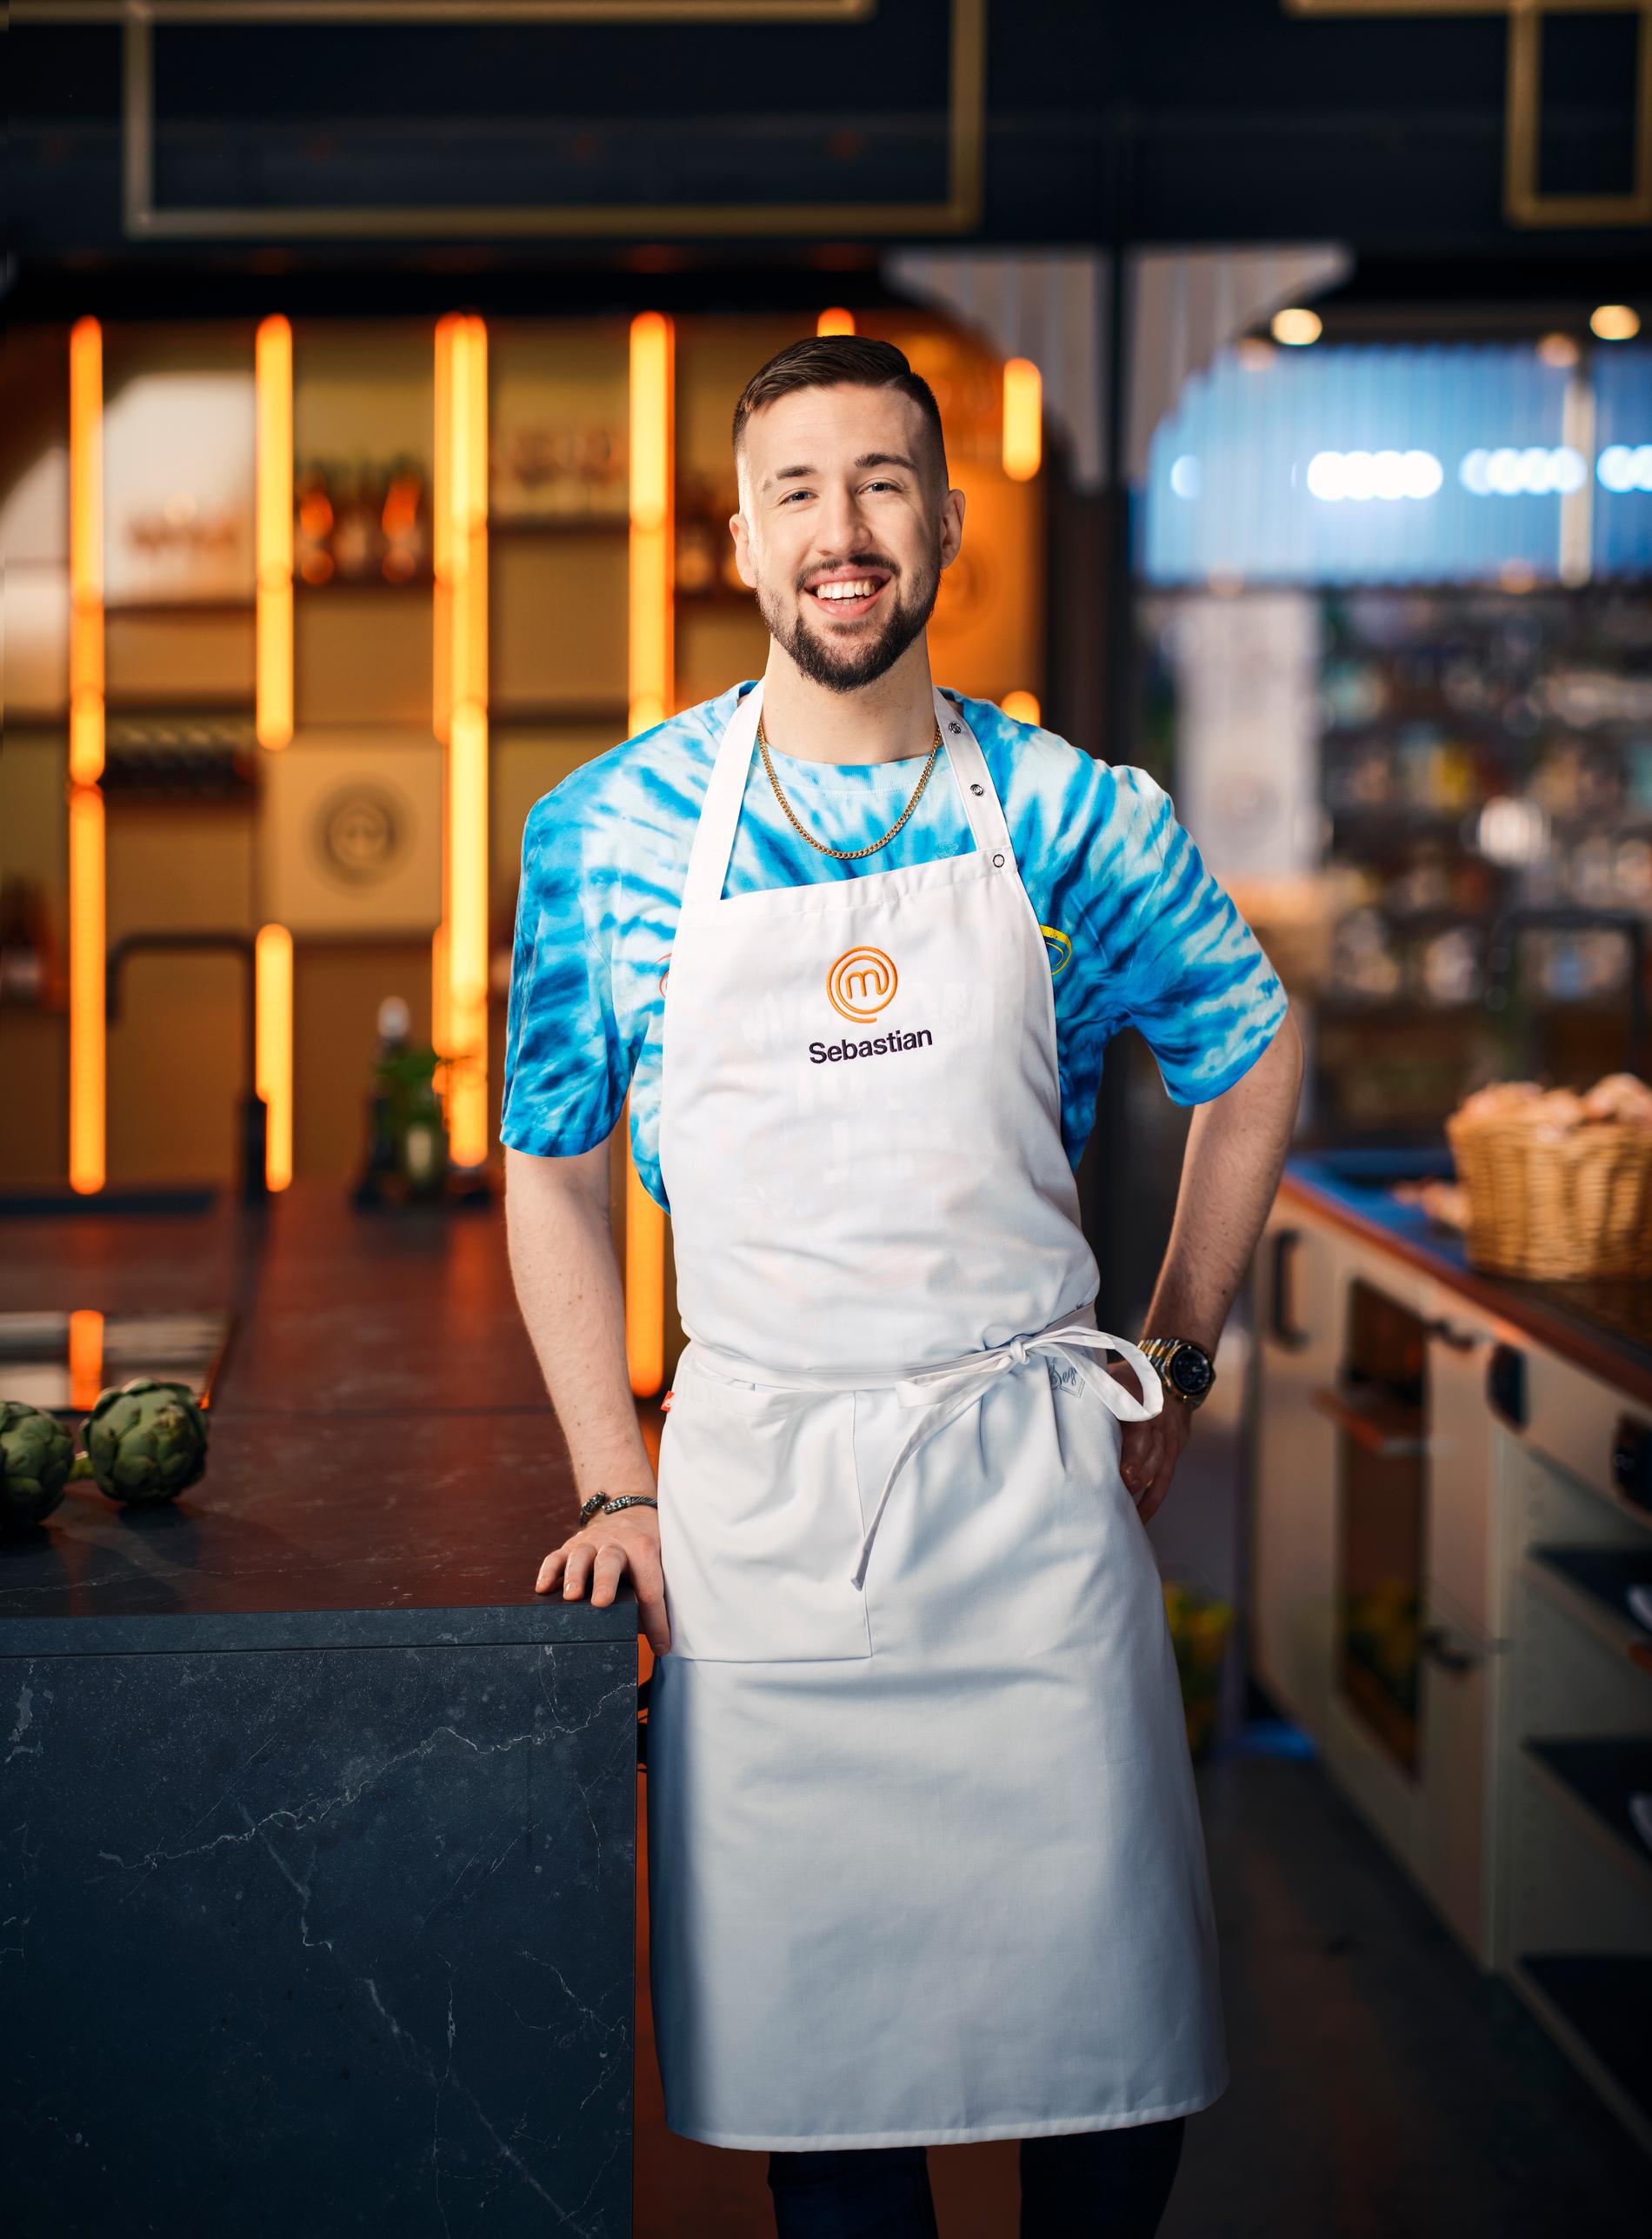 Sebastian Jogér är en av de 12 som gått vidare i matlagningsprogrammet Sveriges mästerkock 2022.